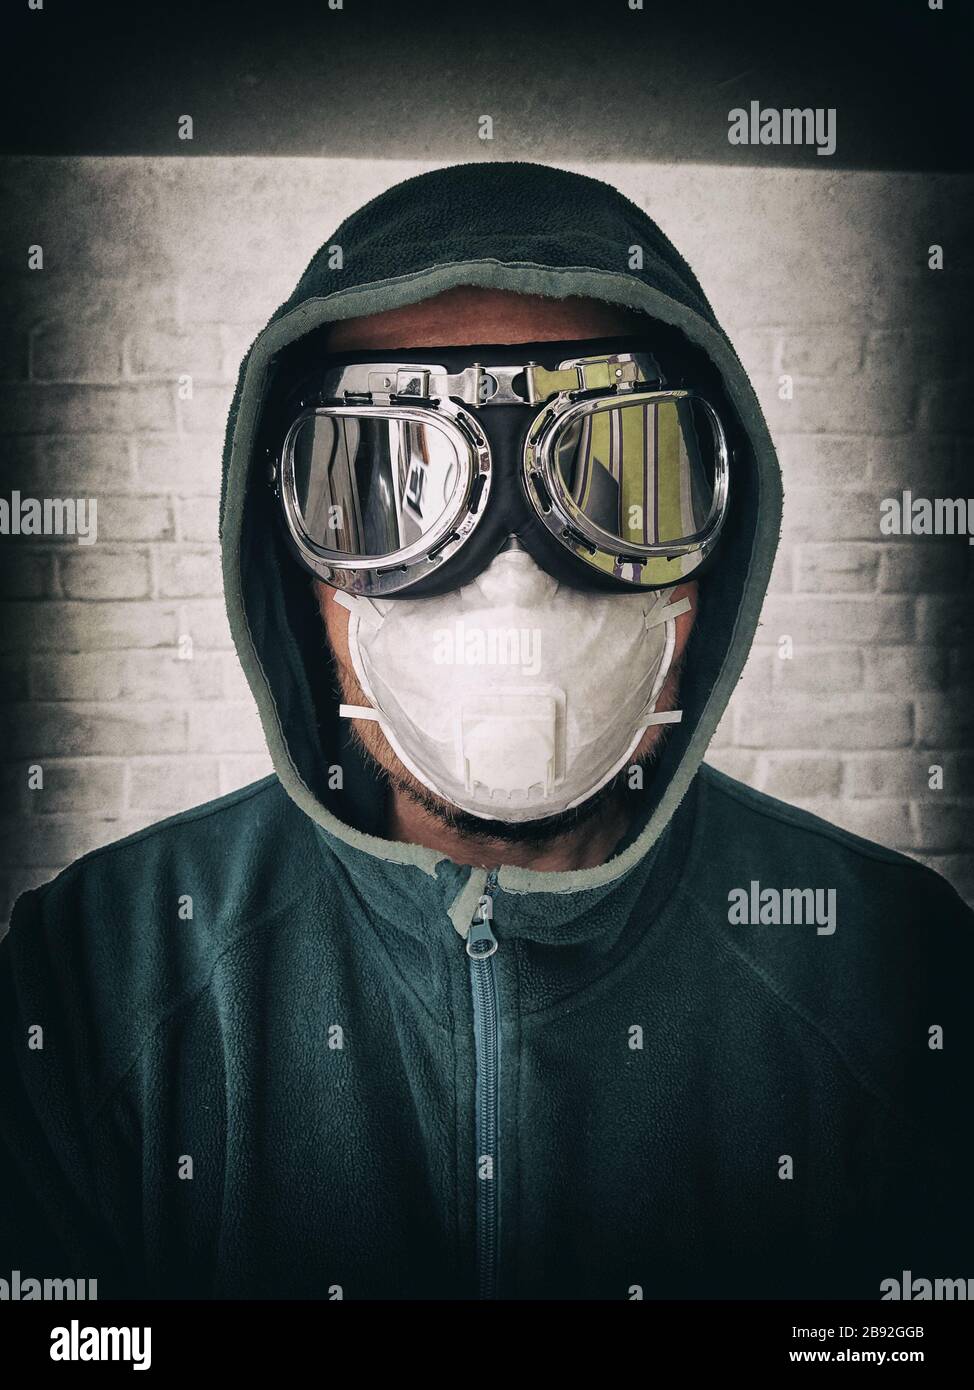 Porträt eines Mannes in Schutzmaske und Spiegelgläser. Stilisiertes Porträt eines pandemischen Gesichts Stockfoto